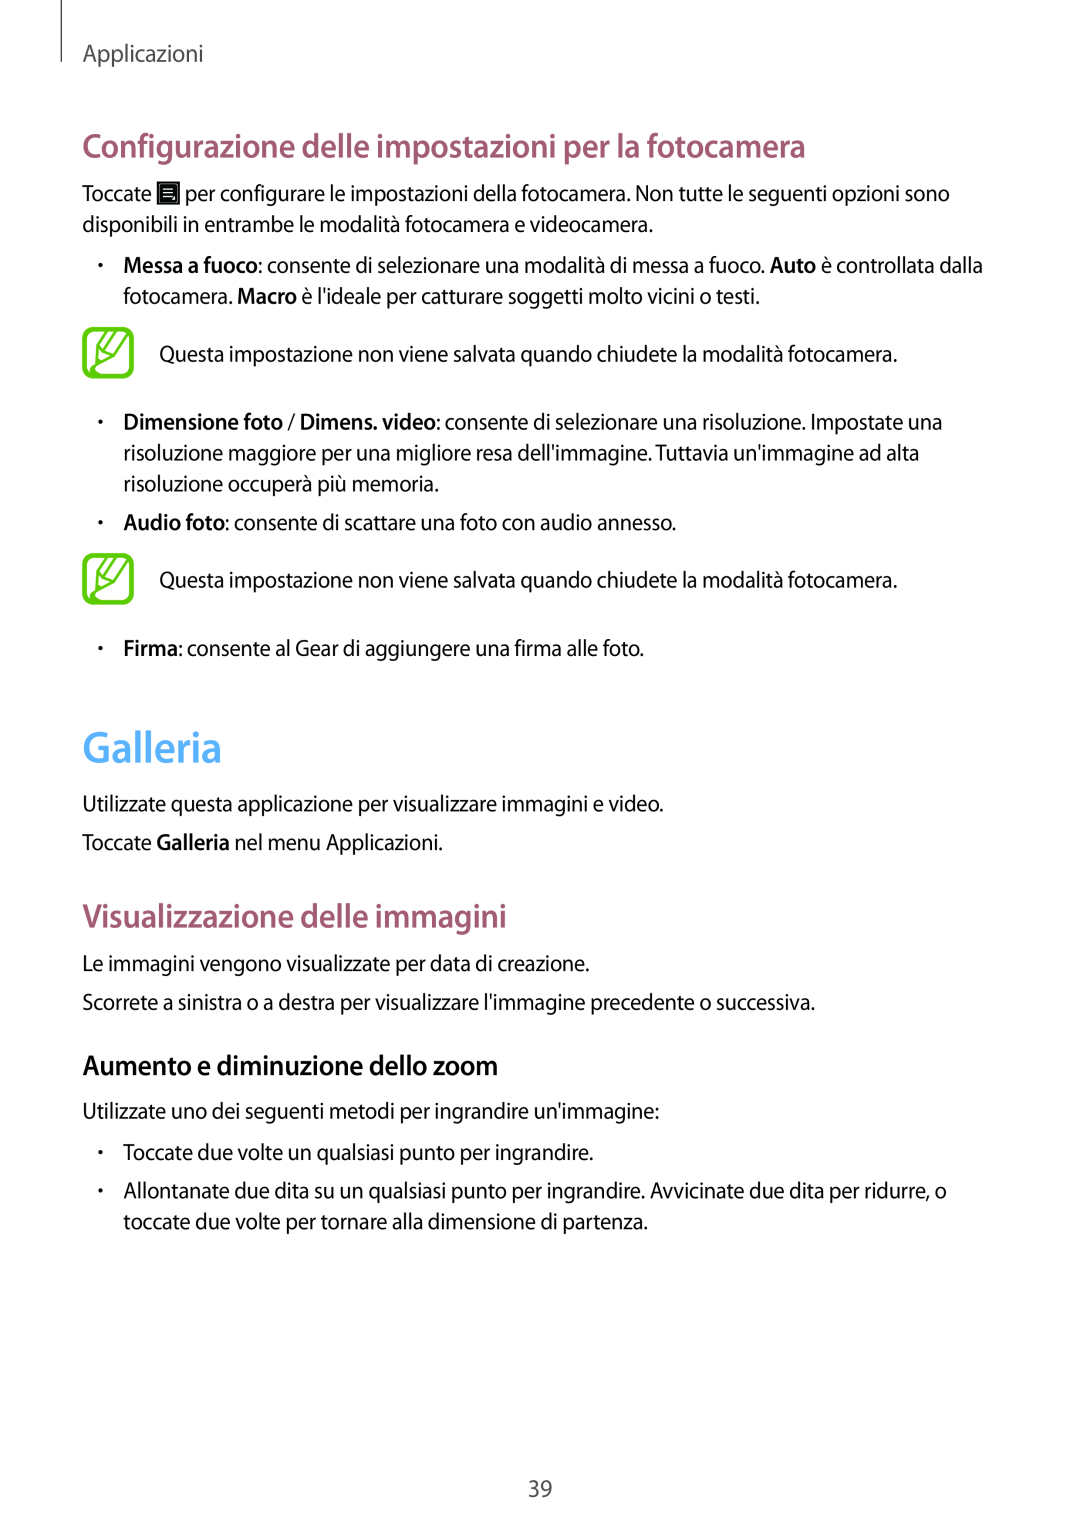 Samsung SM-V7000ZKAXEO manual Galleria, Configurazione delle impostazioni per la fotocamera, Visualizzazione delle immagini 